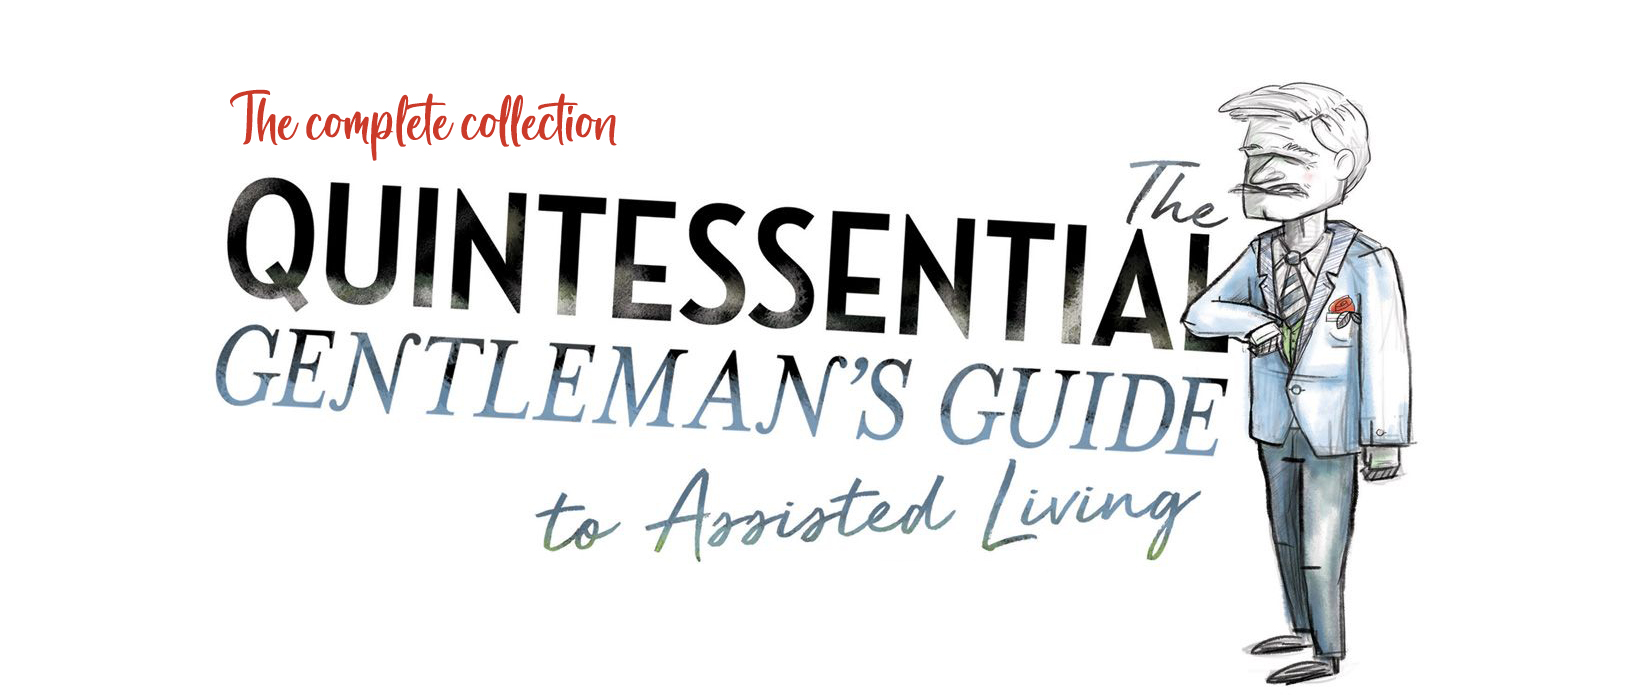 Gentleman's Guide Resources